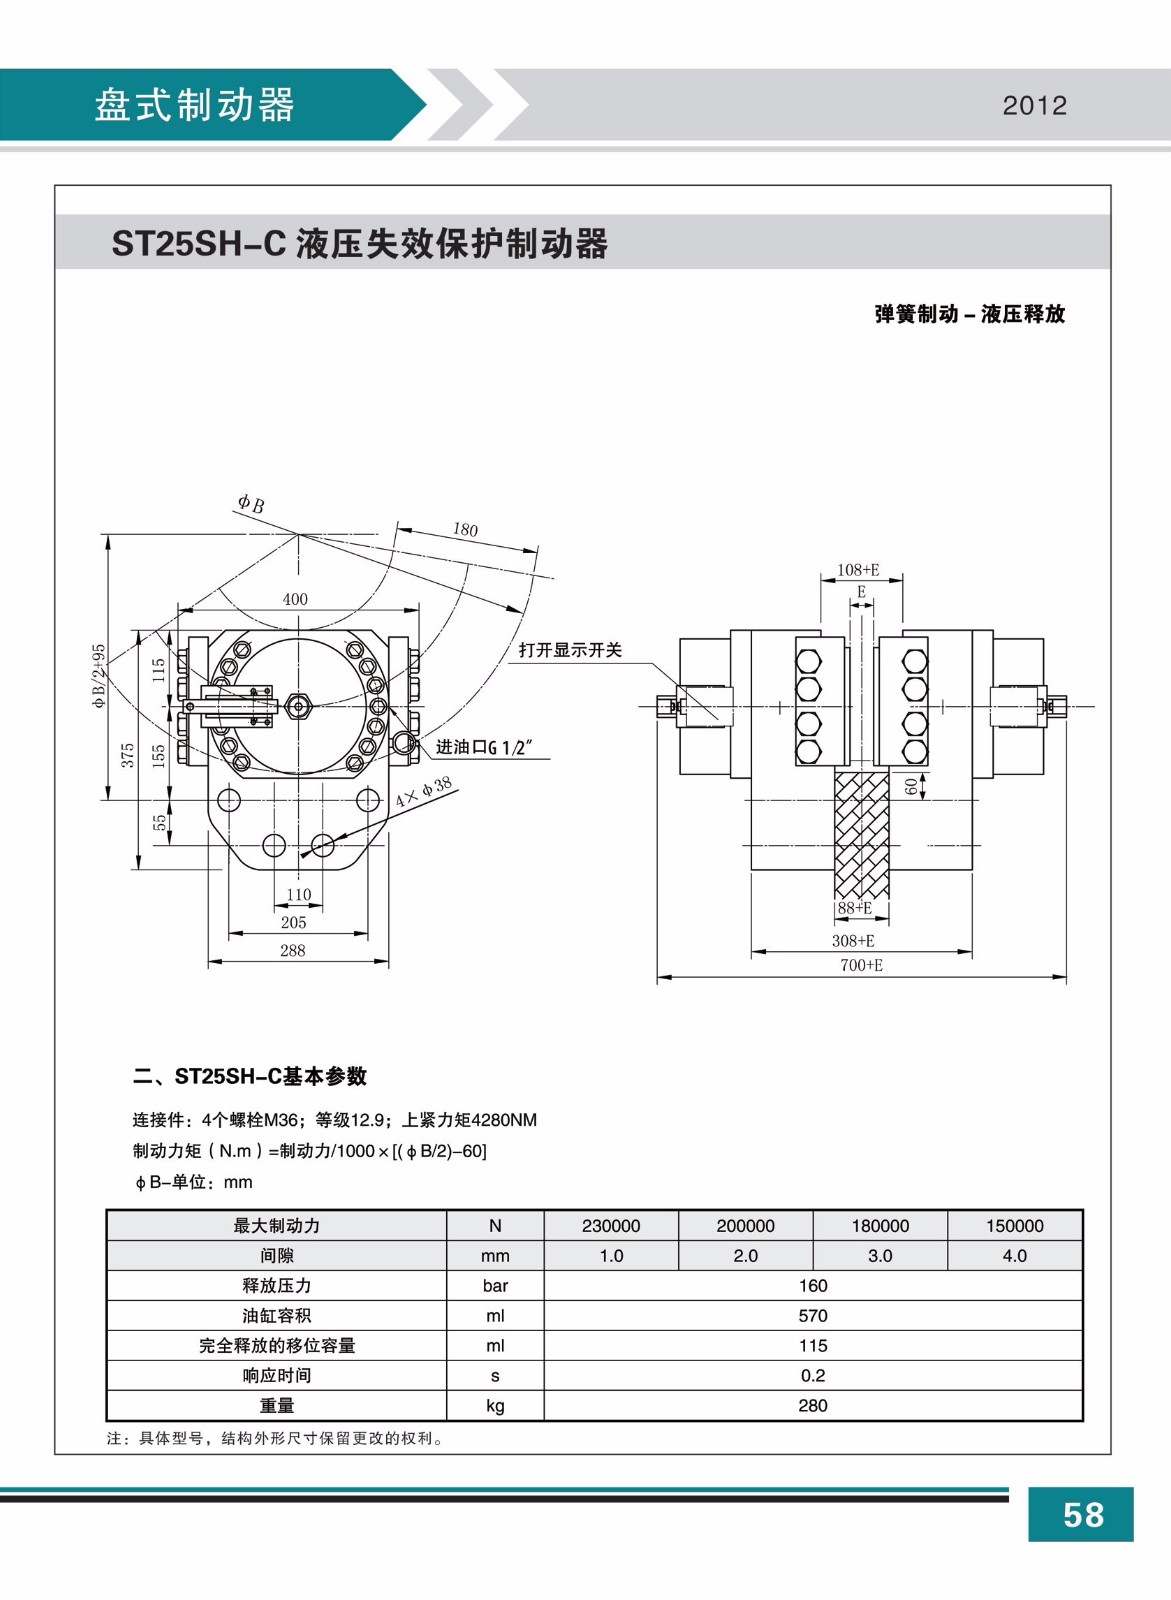 ST25SH-C液压失效保护制动器